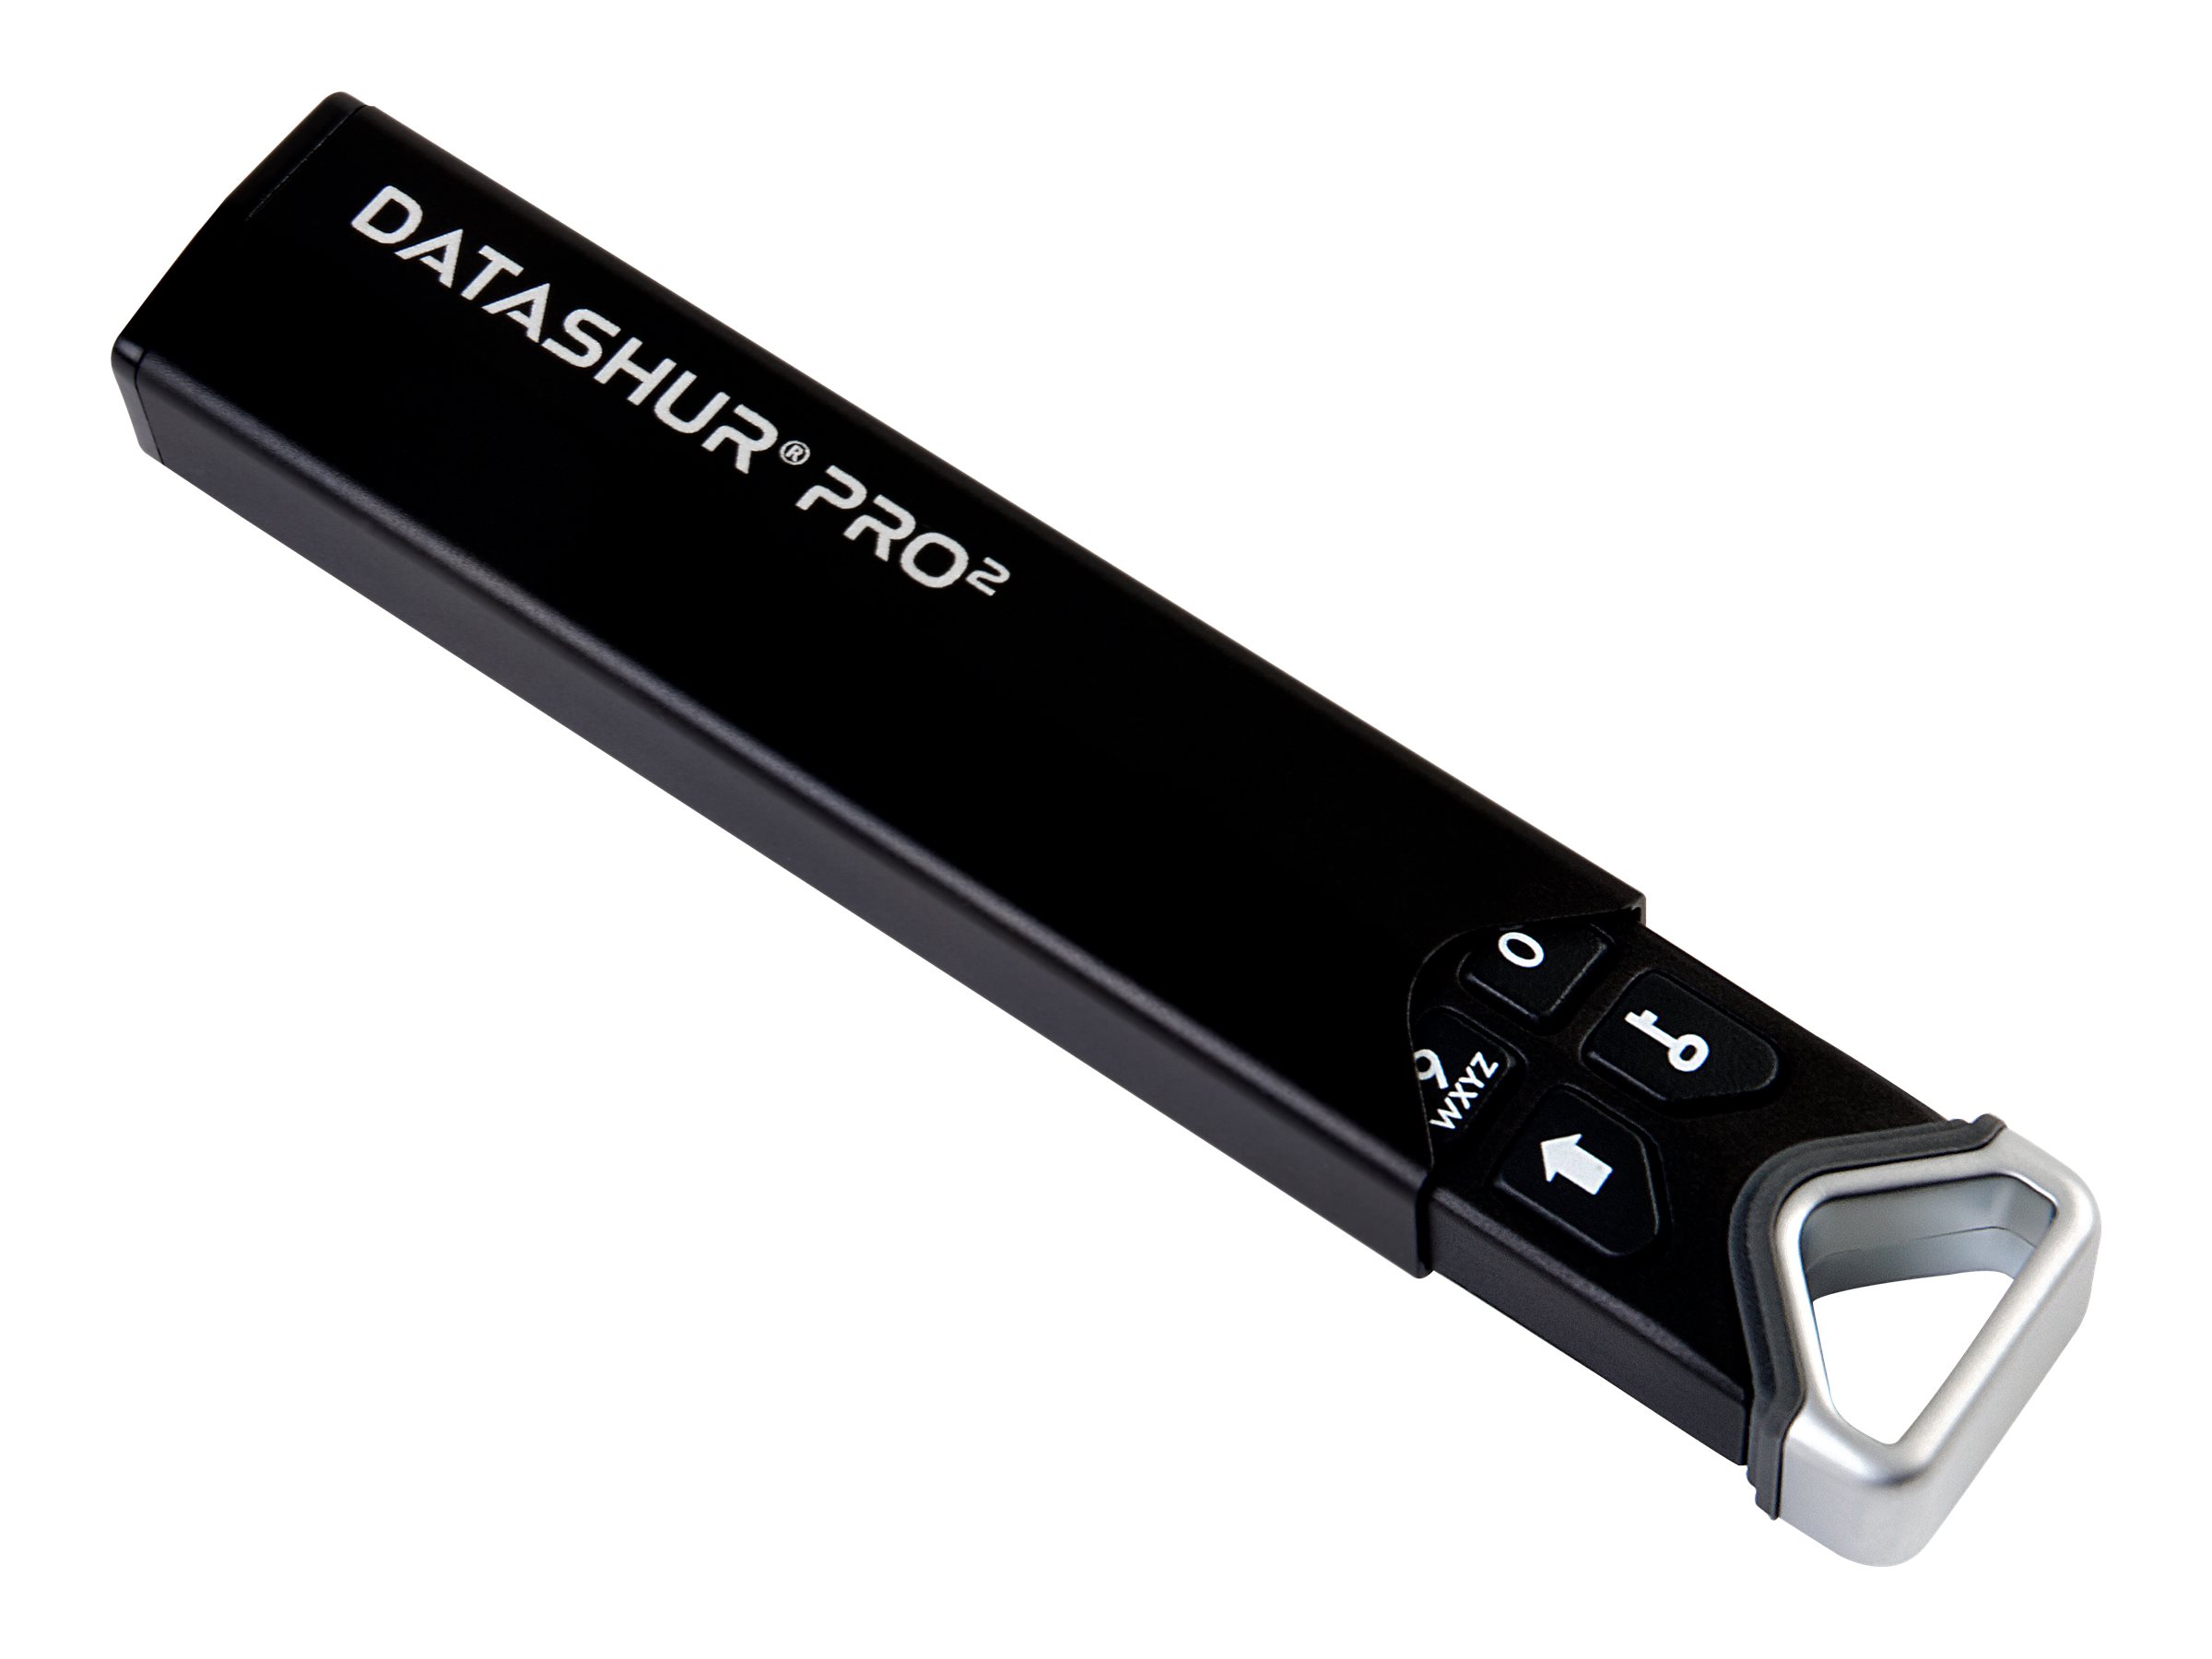 iStorage datAshur Pro2 - USB-Flash-Laufwerk - verschlsselt - 16 GB - USB 3.2 Gen 1 - FIPS 140-2 Level 3